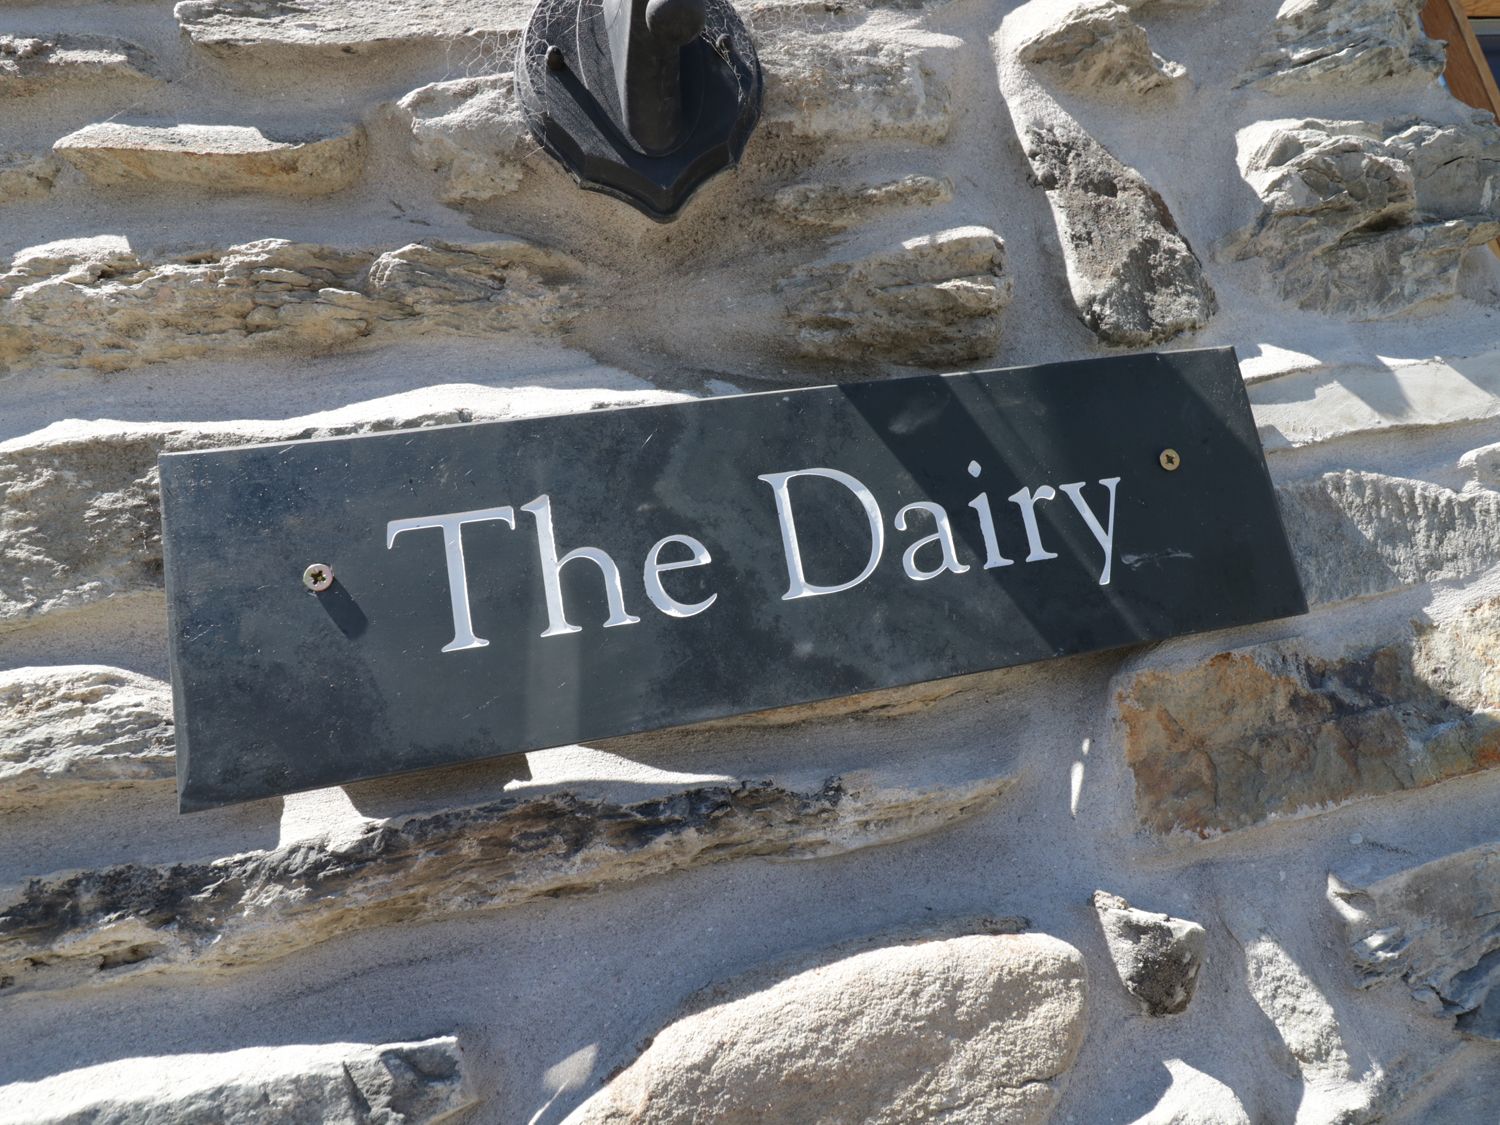 The Dairy, Corwen